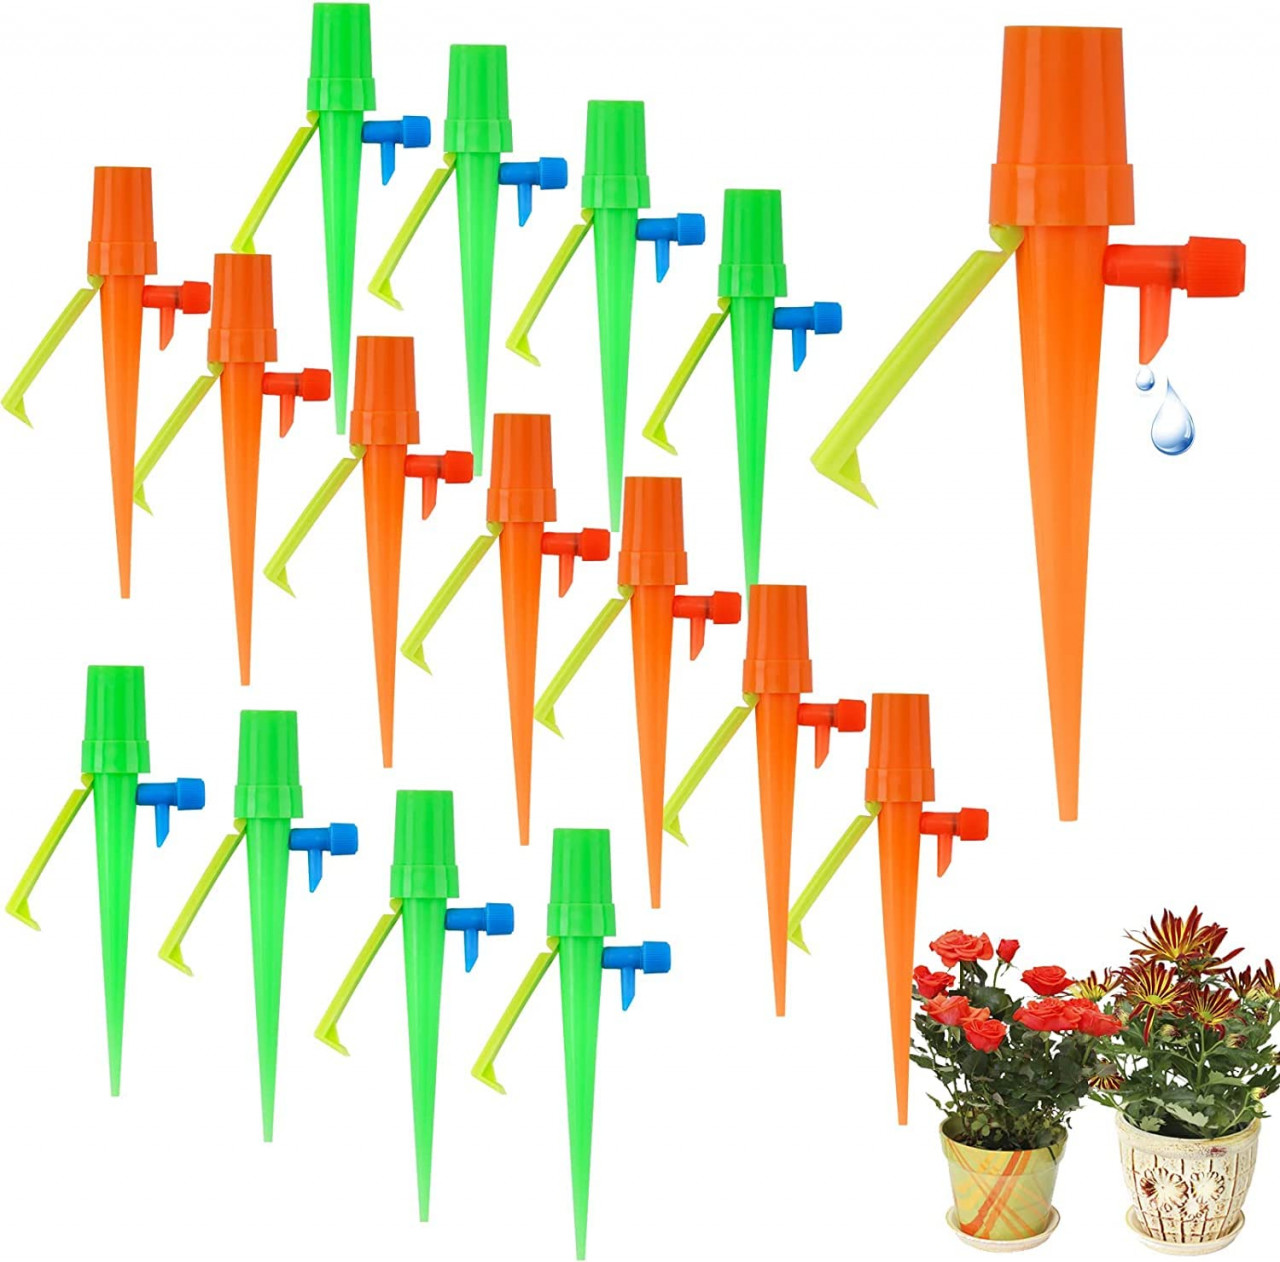 Sistem reglabil de udare pentru 15 plante SLURERBE, ABS, multicolor, 22,9 cm 229 pret redus